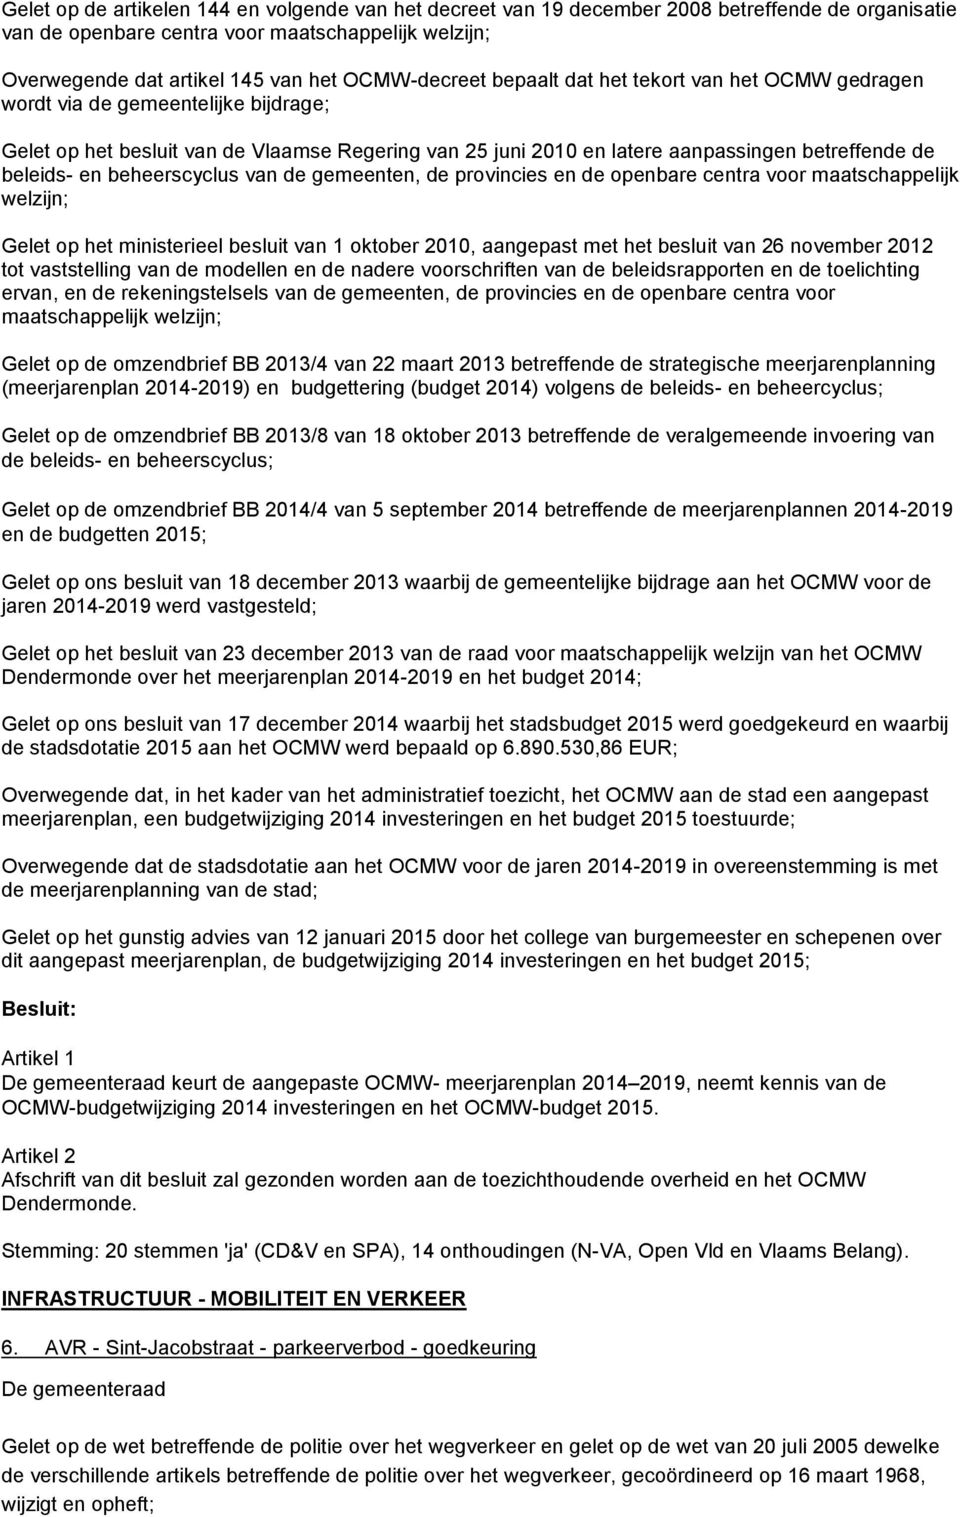 beleids- en beheerscyclus van de gemeenten, de provincies en de openbare centra voor maatschappelijk welzijn; Gelet op het ministerieel besluit van 1 oktober 2010, aangepast met het besluit van 26